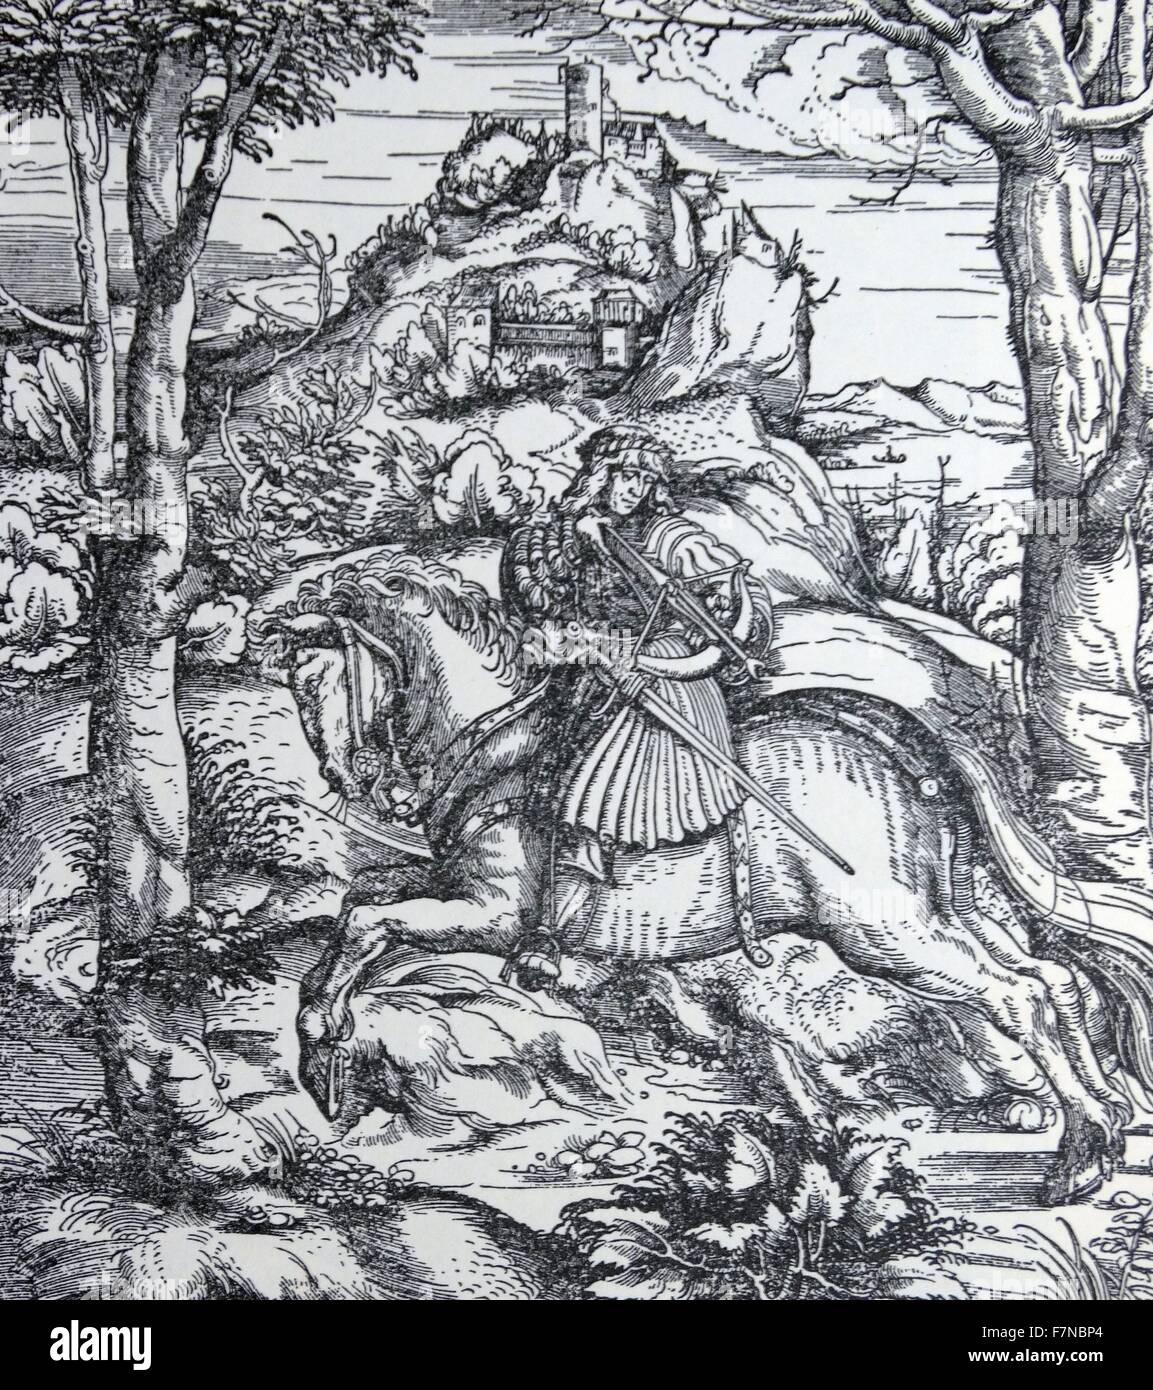 Weiss König (White King) war einer der drei Bücher, die im Auftrag von Kaiser Maximilian i. (1459-1519). Das Buch zeichnet Maximilians Leben und seinen Hof als eine ideale ritterlichen Gesellschaft darstellt. 1515 Stockfoto